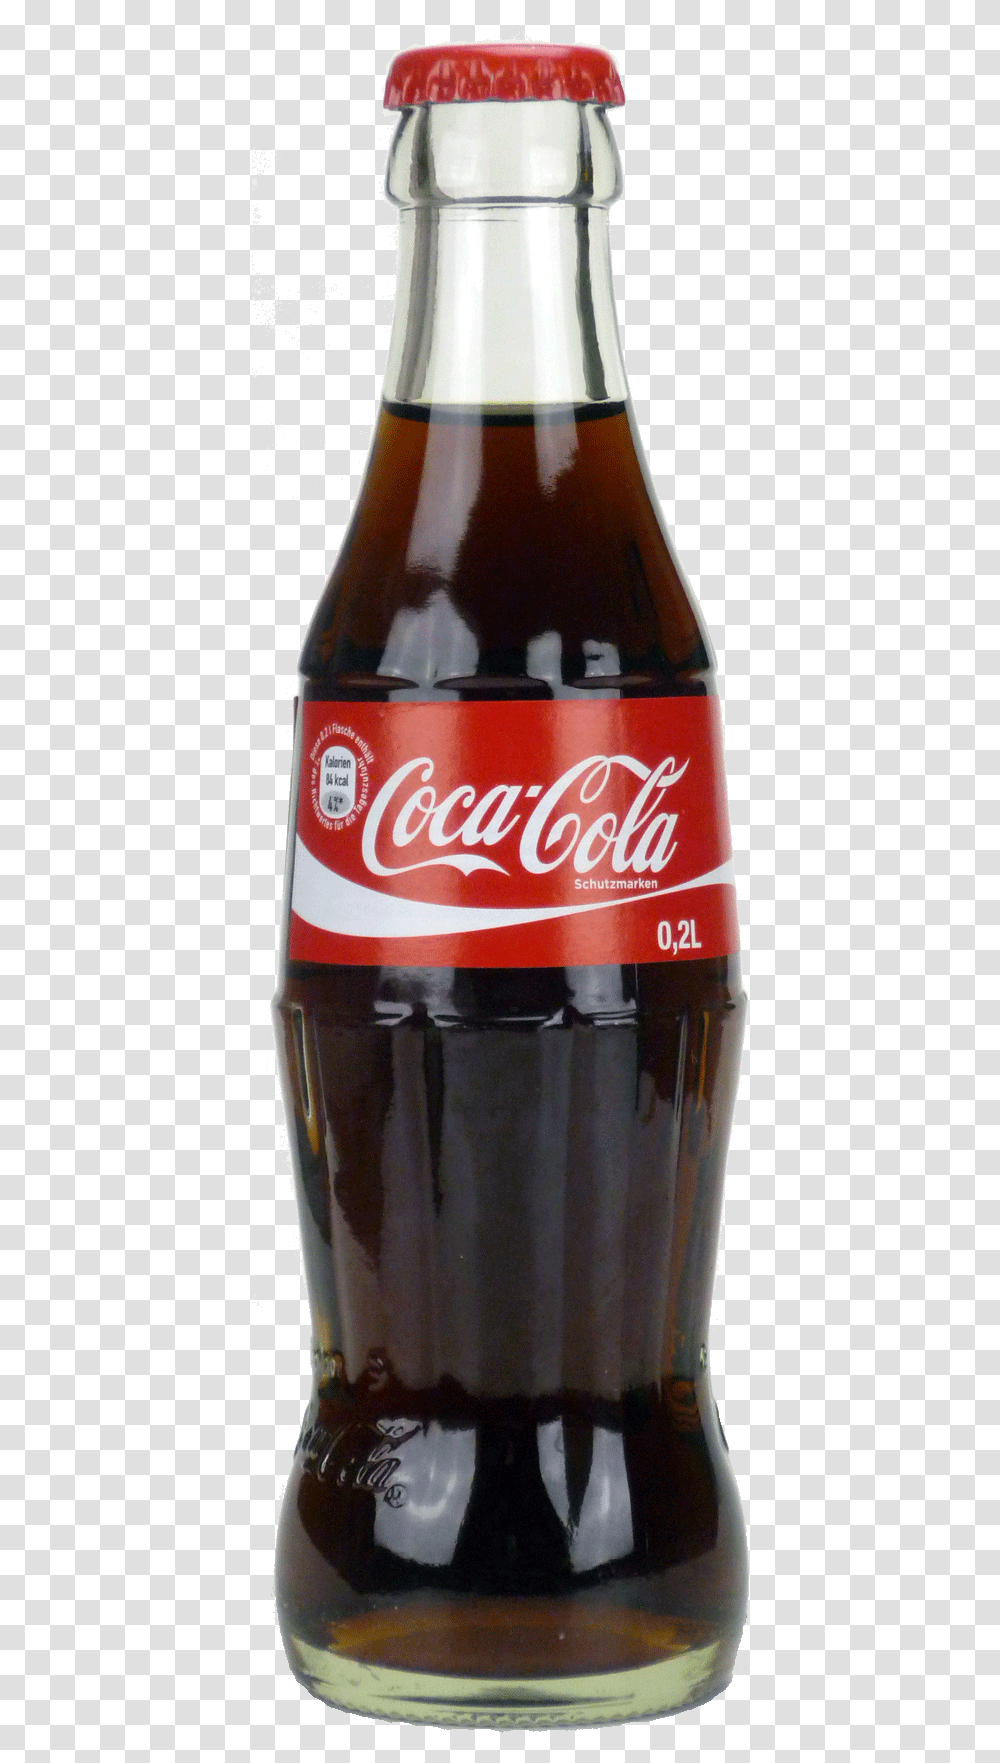 Coca Cola Free Coca Cola Bottle, Coke, Beverage, Drink, Beer Transparent Png